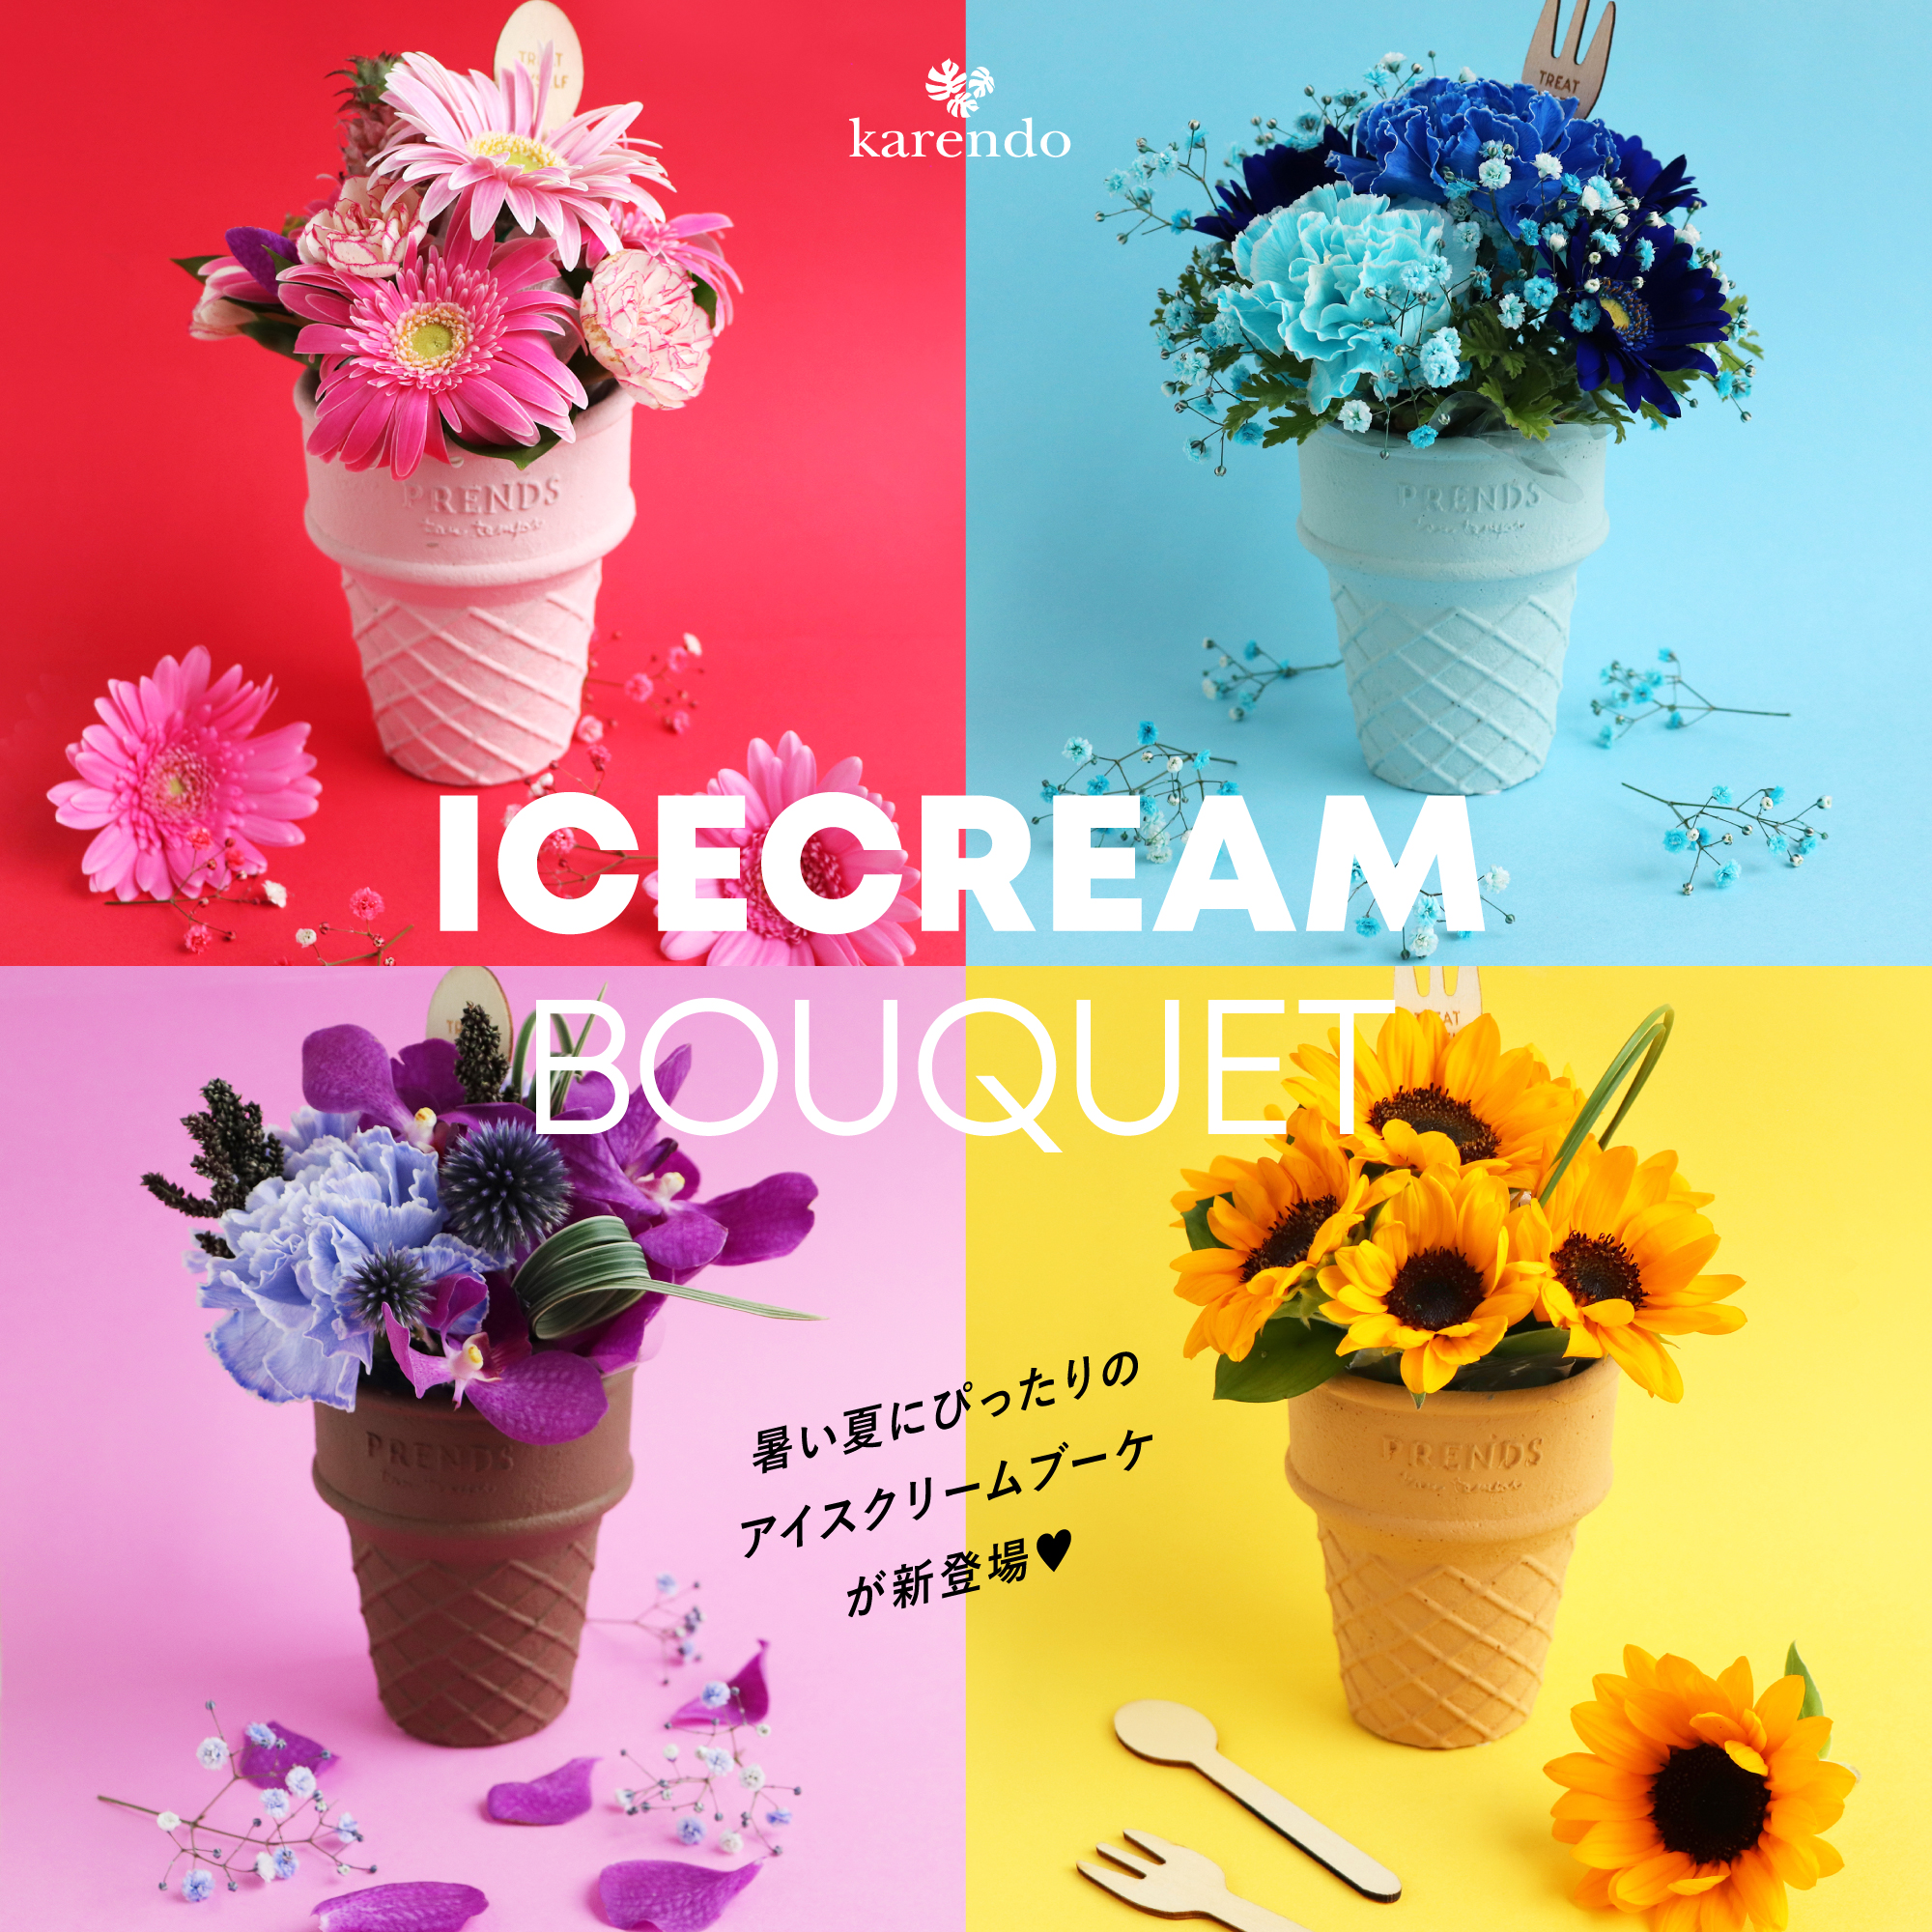 カラフルなお花がスイーツに Icecream Bouquet アイスクリームブーケ がフラワーショップkarendoから夏季限定で新発売 株式会社 花恋人のプレスリリース